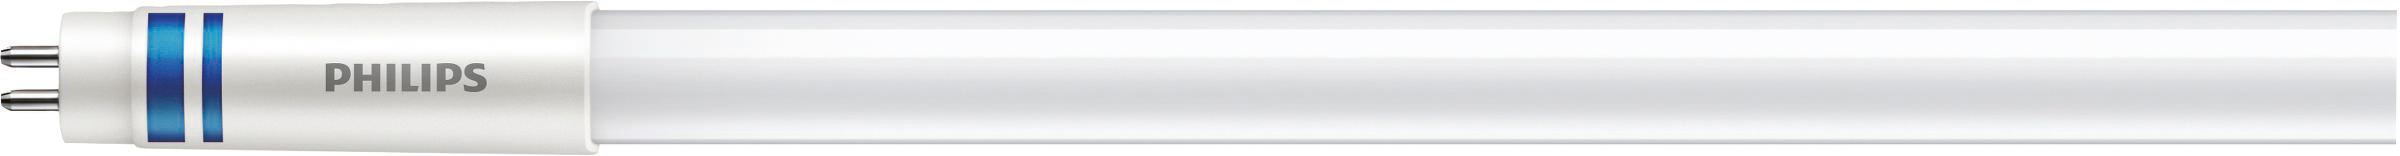 Philips Lighting LED-Tube T5 f. EVG G5, 830, 1449mm MAS LEDtube#41905600